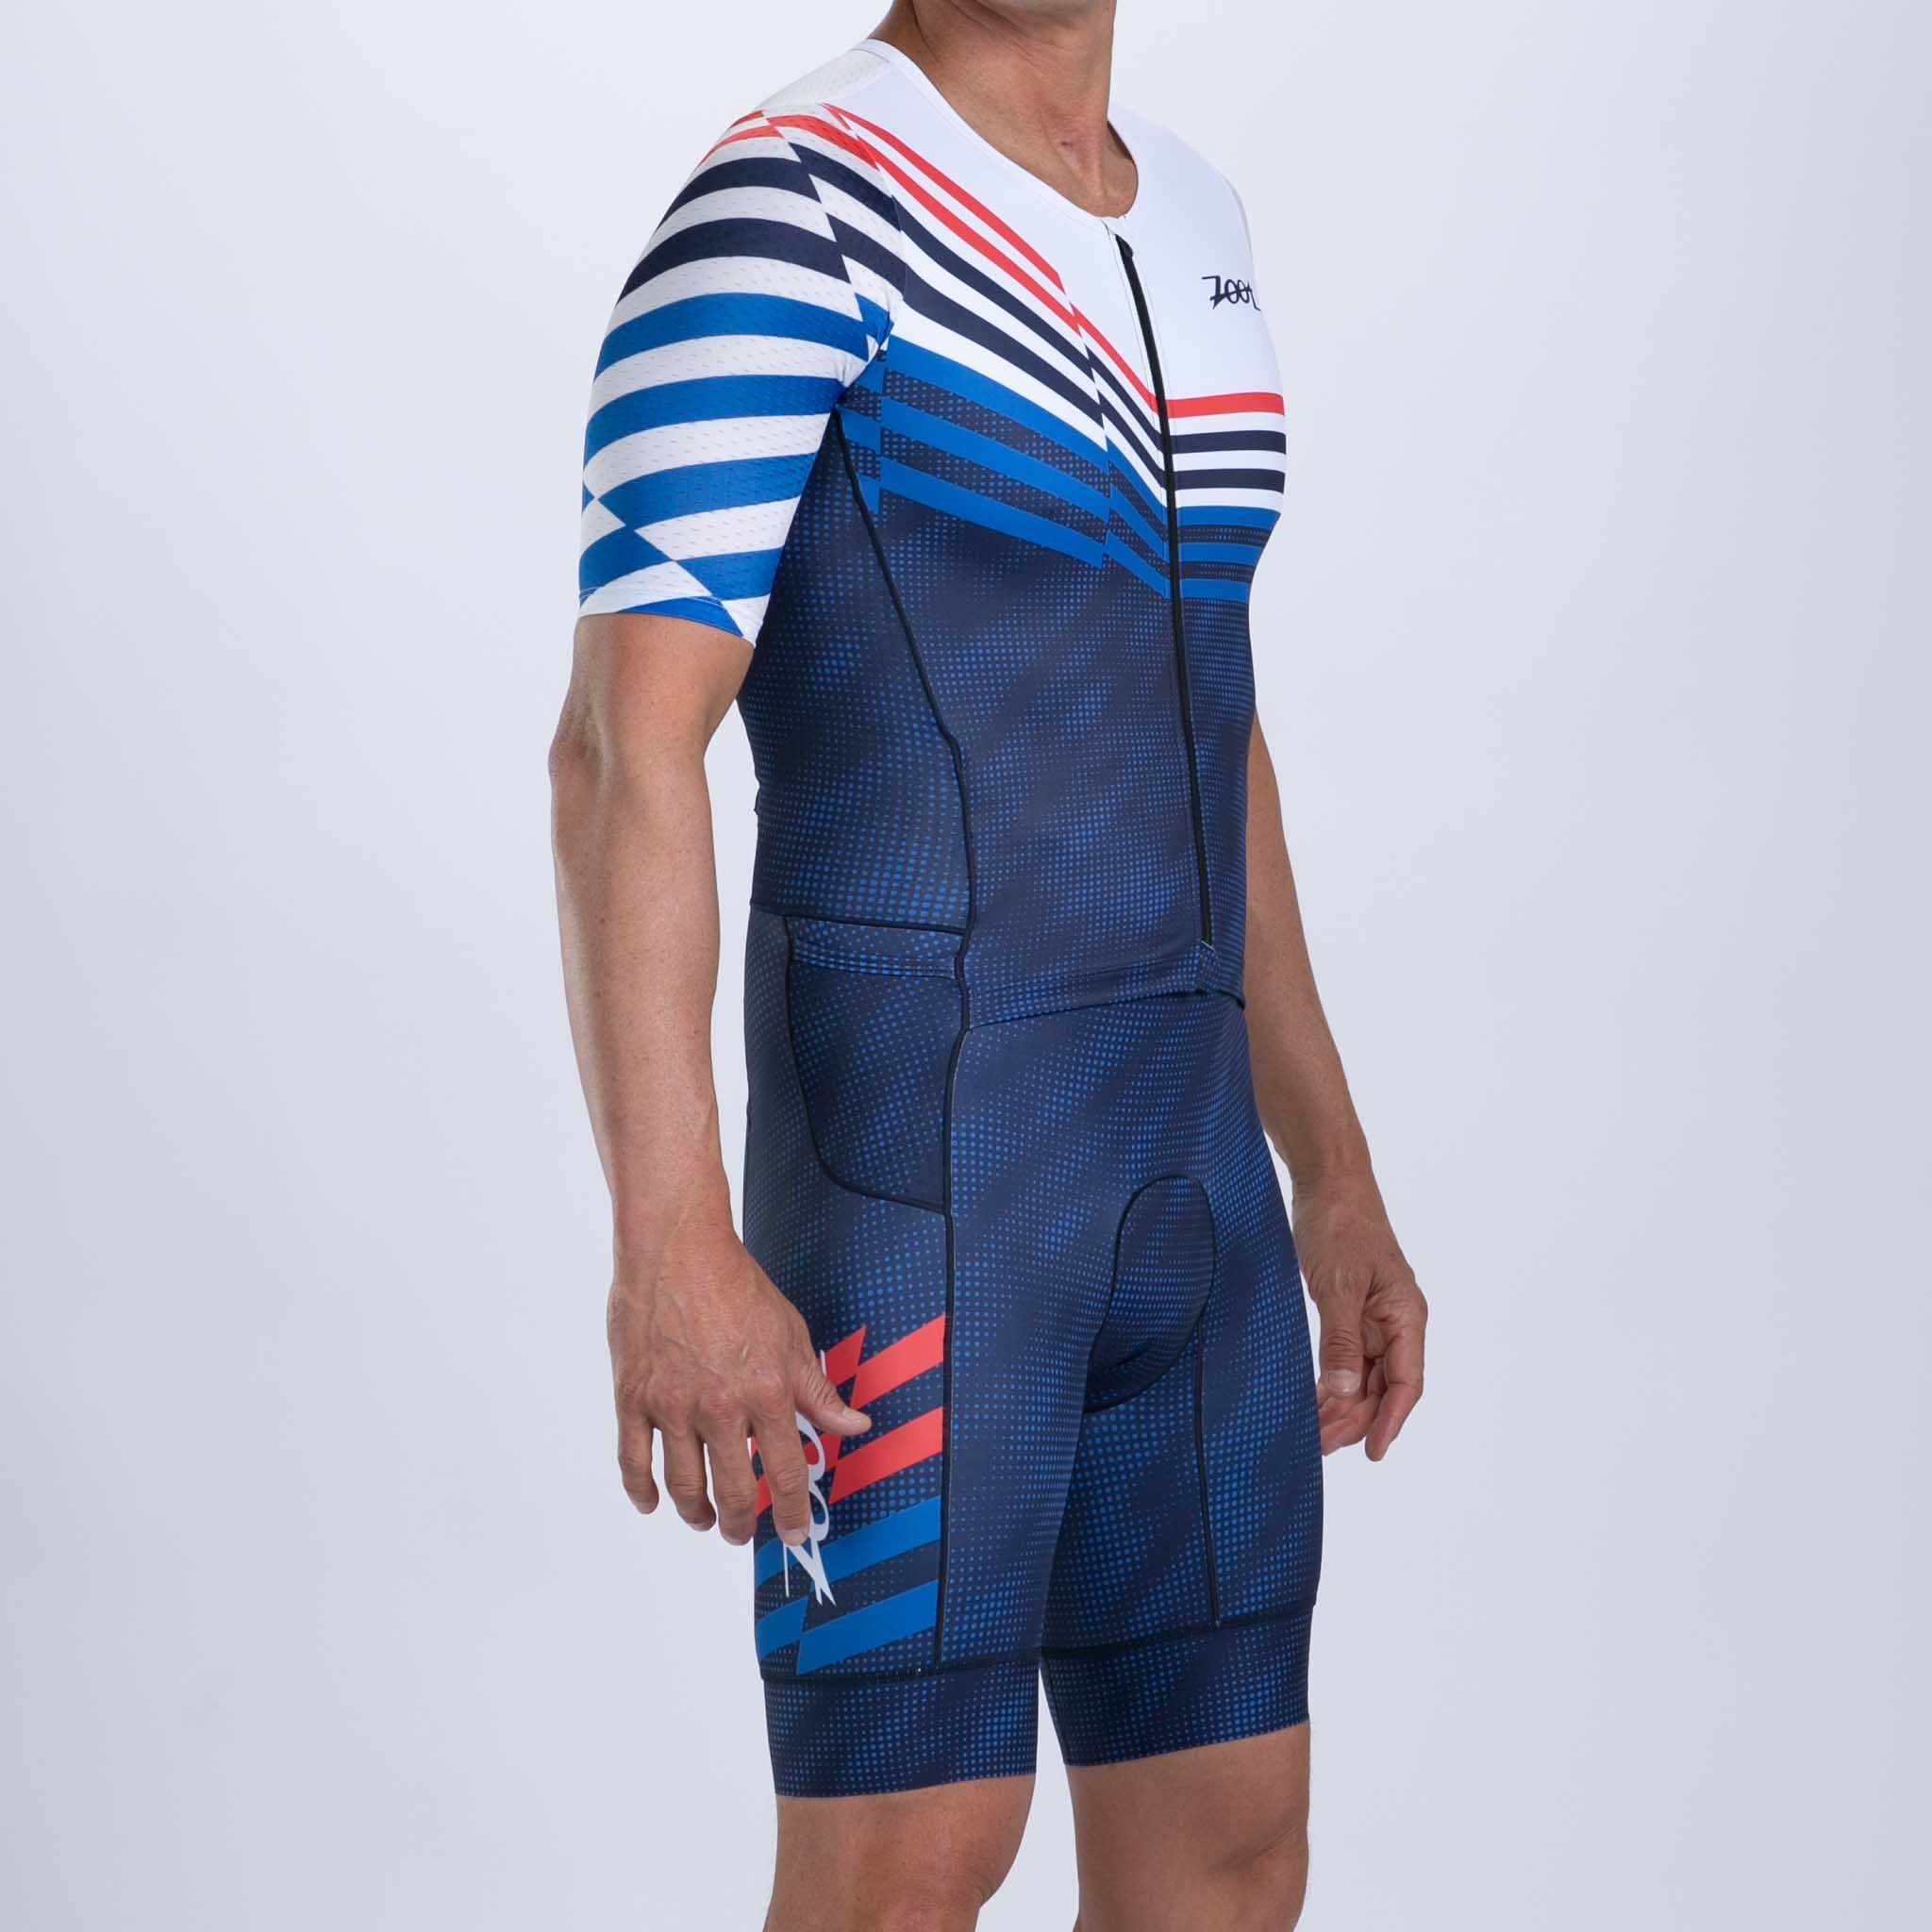 Zoot Sports TRI RACESUITS Men's Ltd Tri Aero Fz Racesuit - Cote d'Azur